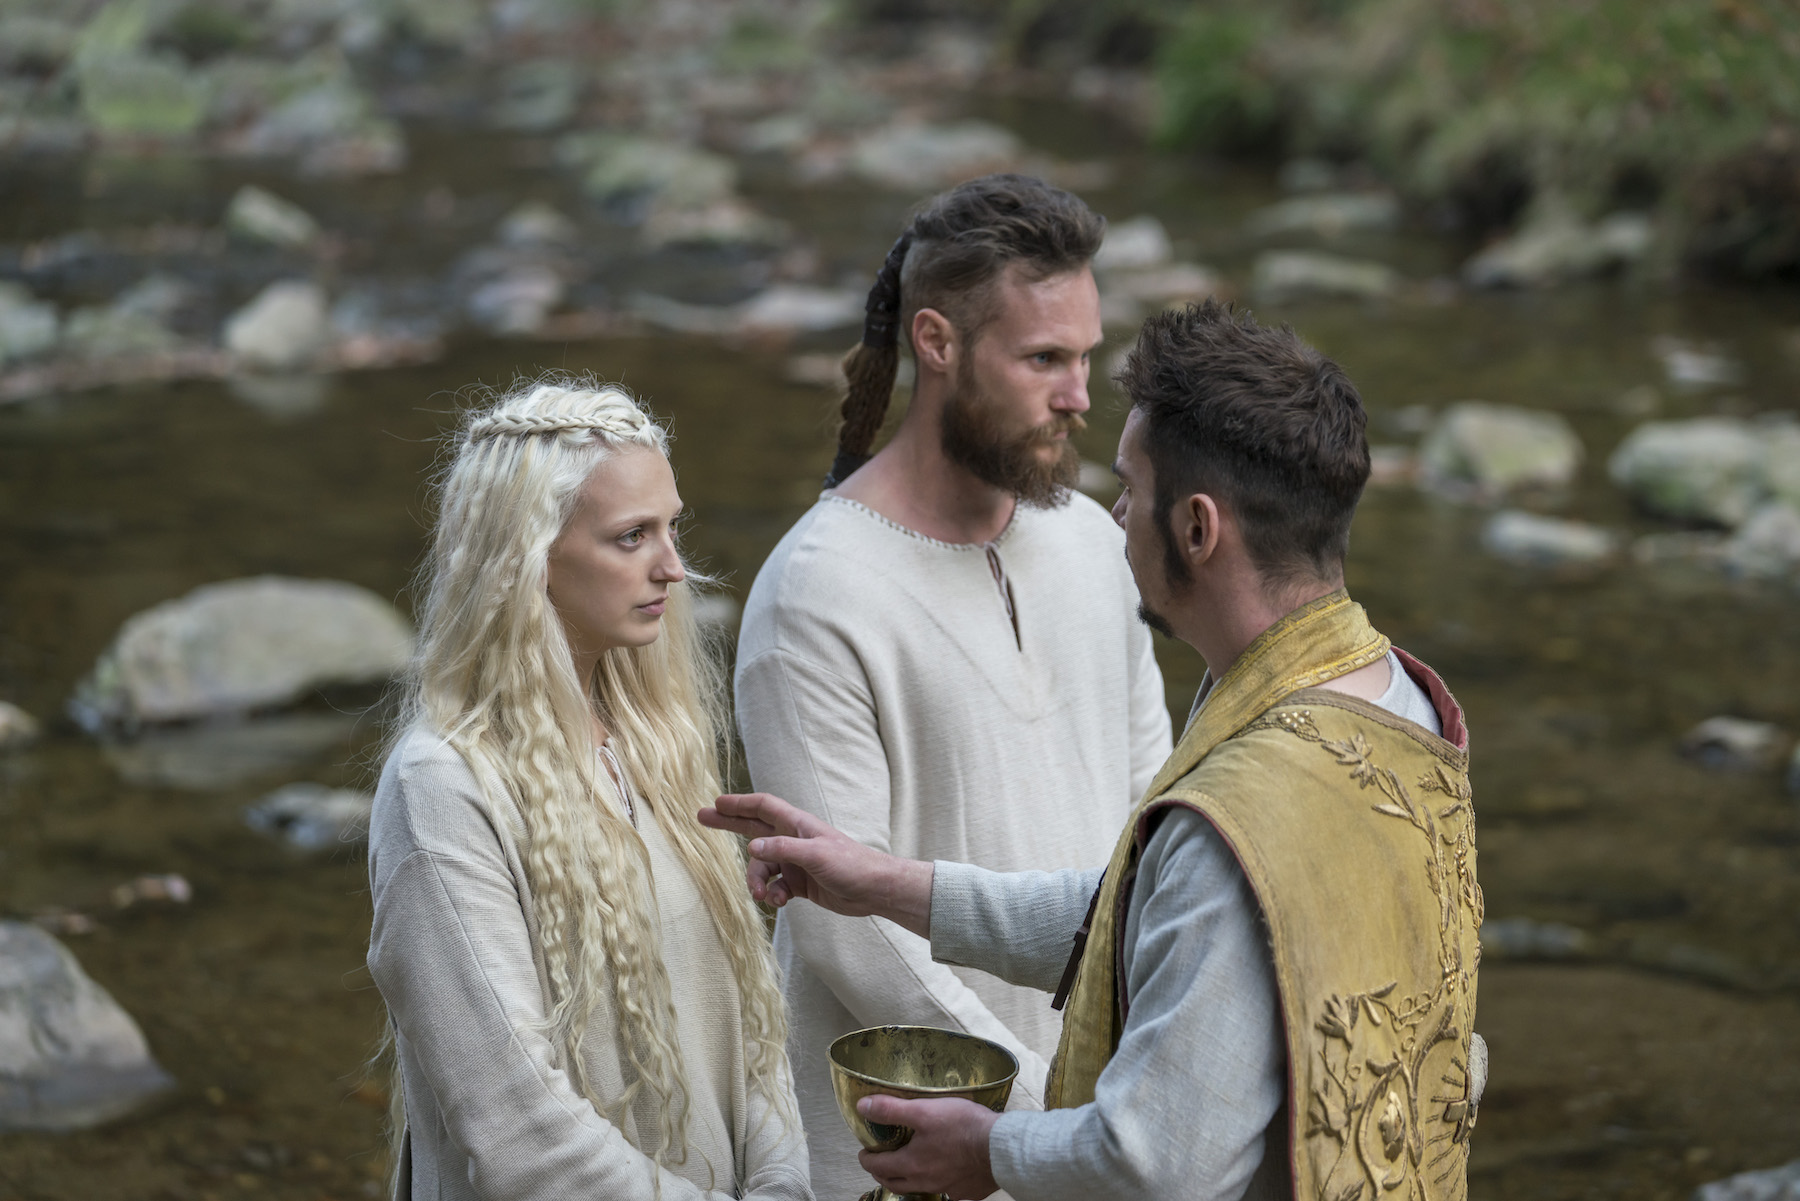 Ubbe y Torvi se convierten al cristianismo en 'Vikings'